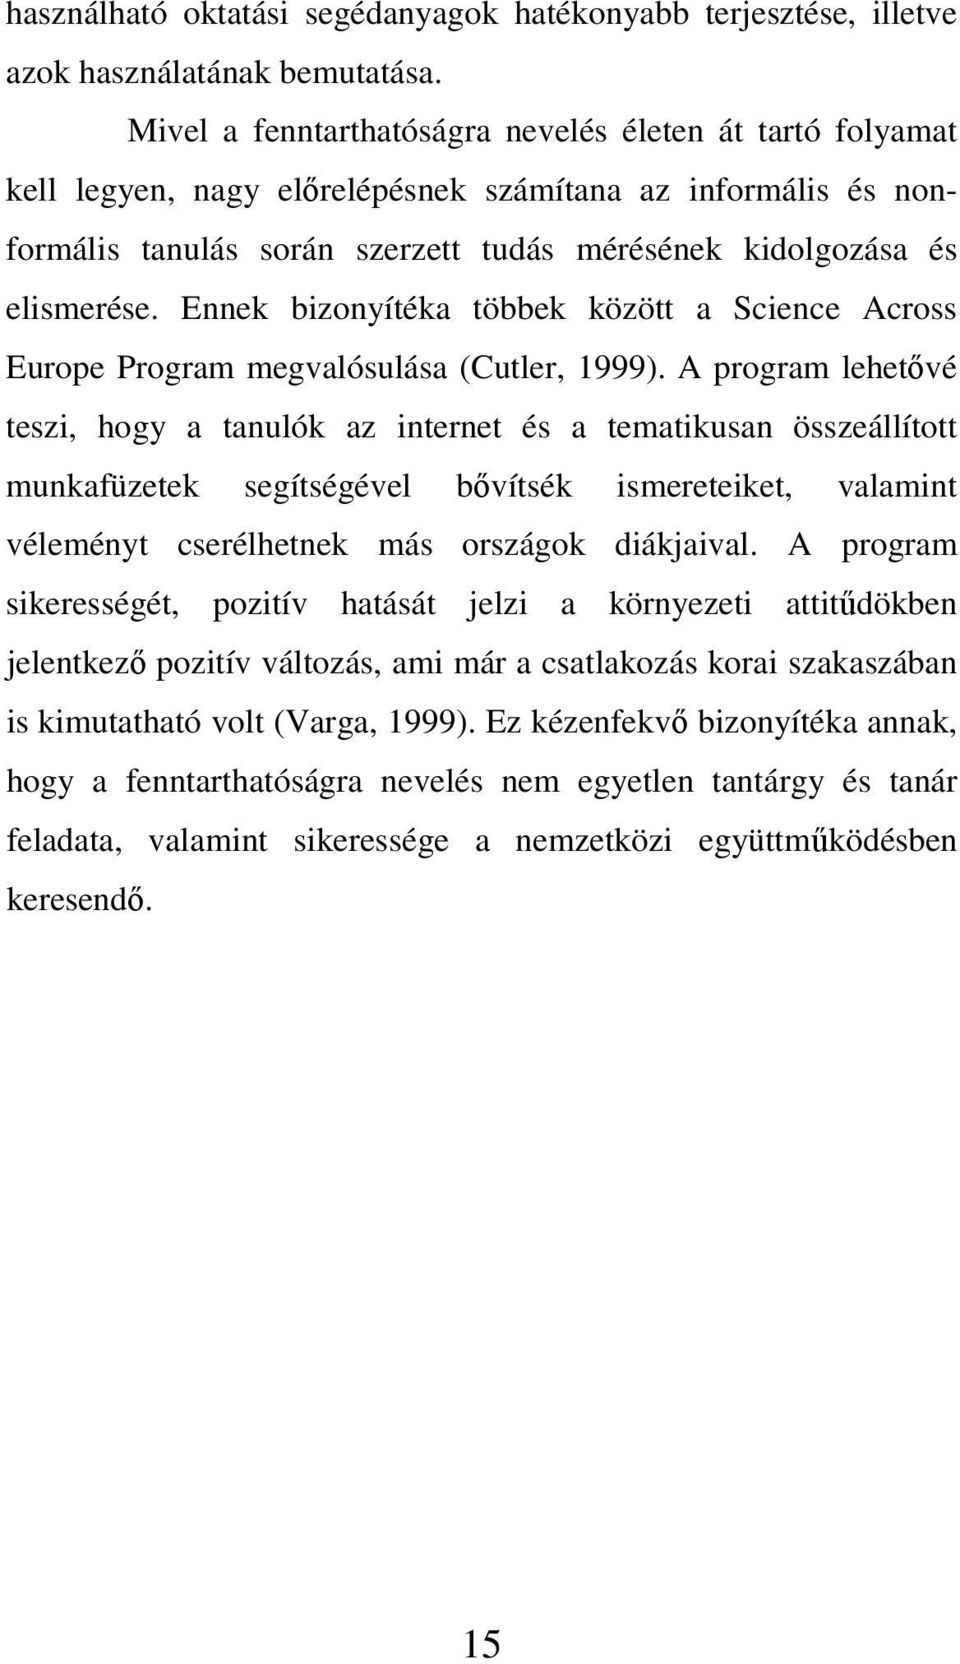 Ennek bizonyítéka többek között a Science Across Europe Program megvalósulása (Cutler, 1999).